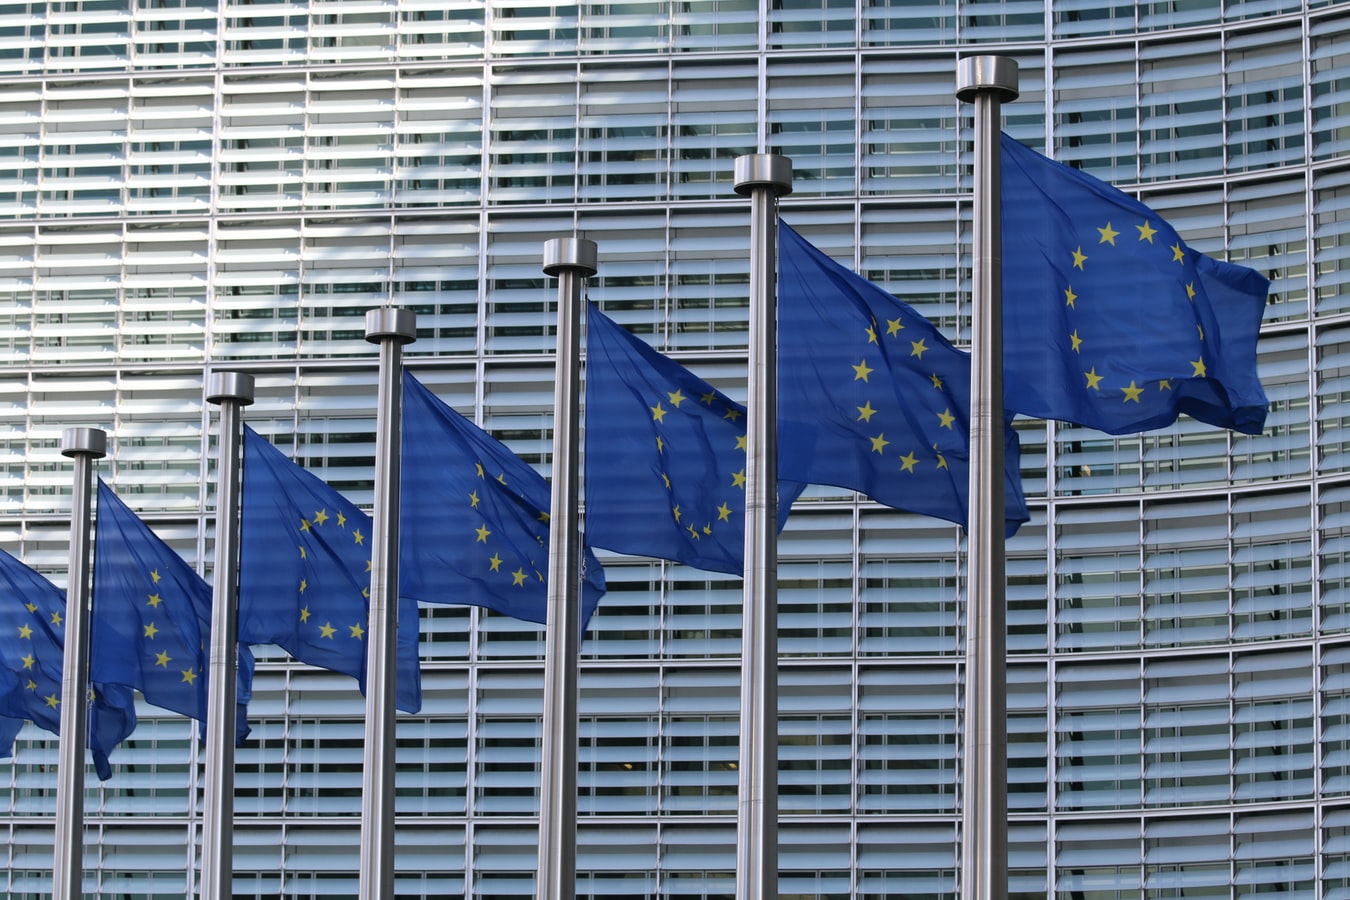 Υπόθεση Ναβάλνι νέα: Η ΕΕ επέβαλε κυρώσεις κατά της Ρωσίας